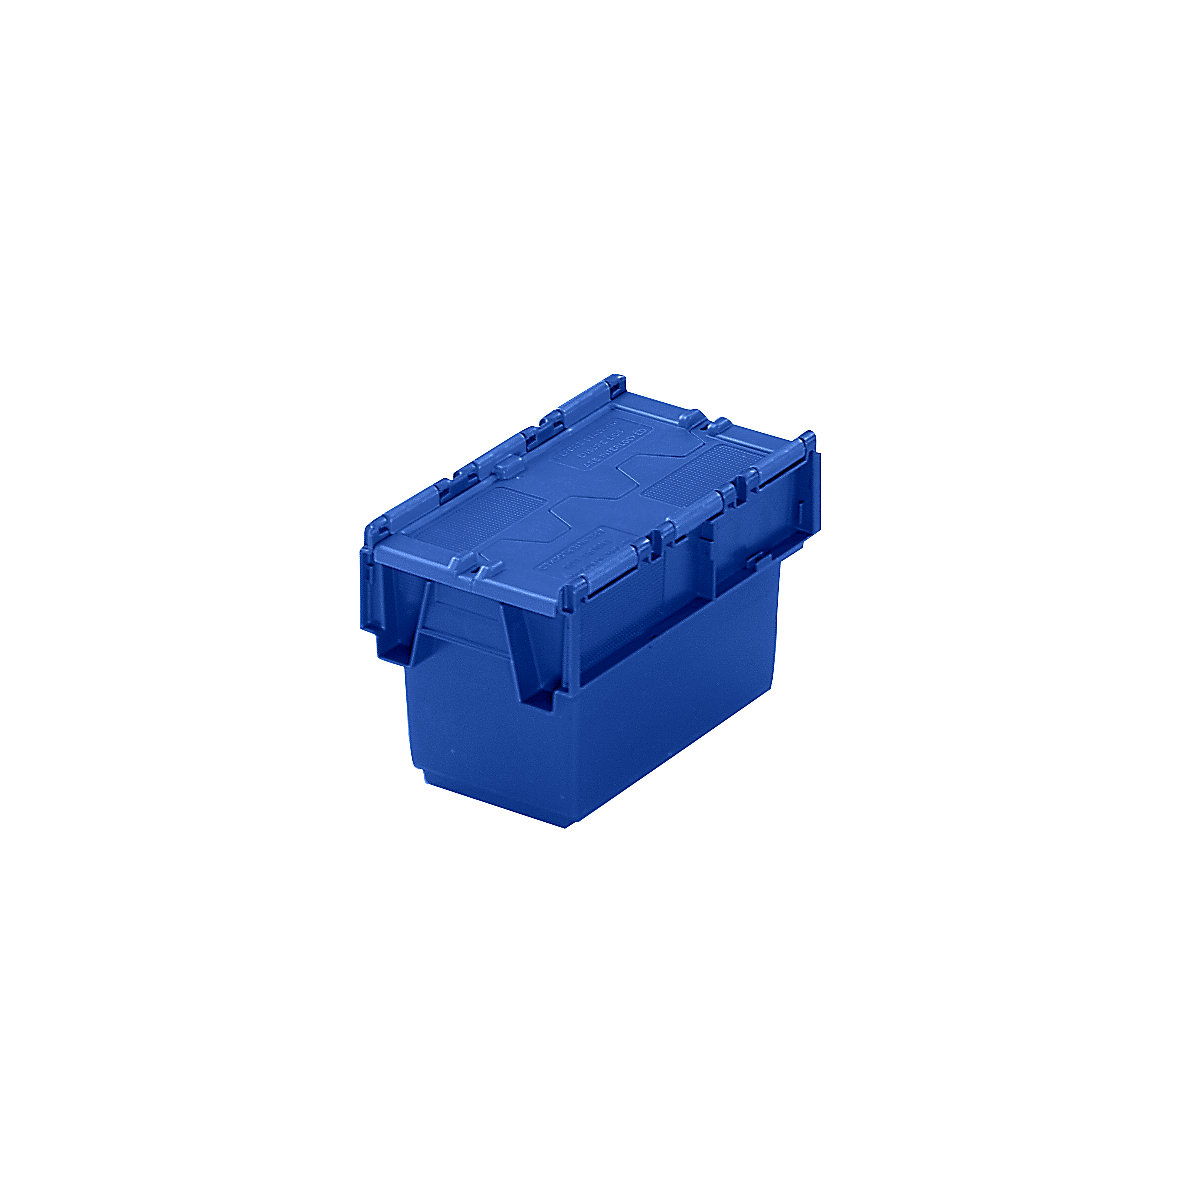 Recipiente empilhável e retornável com tampa articulada, volume 6 litros, CxLxA 300 x 200 x 200 mm, azul